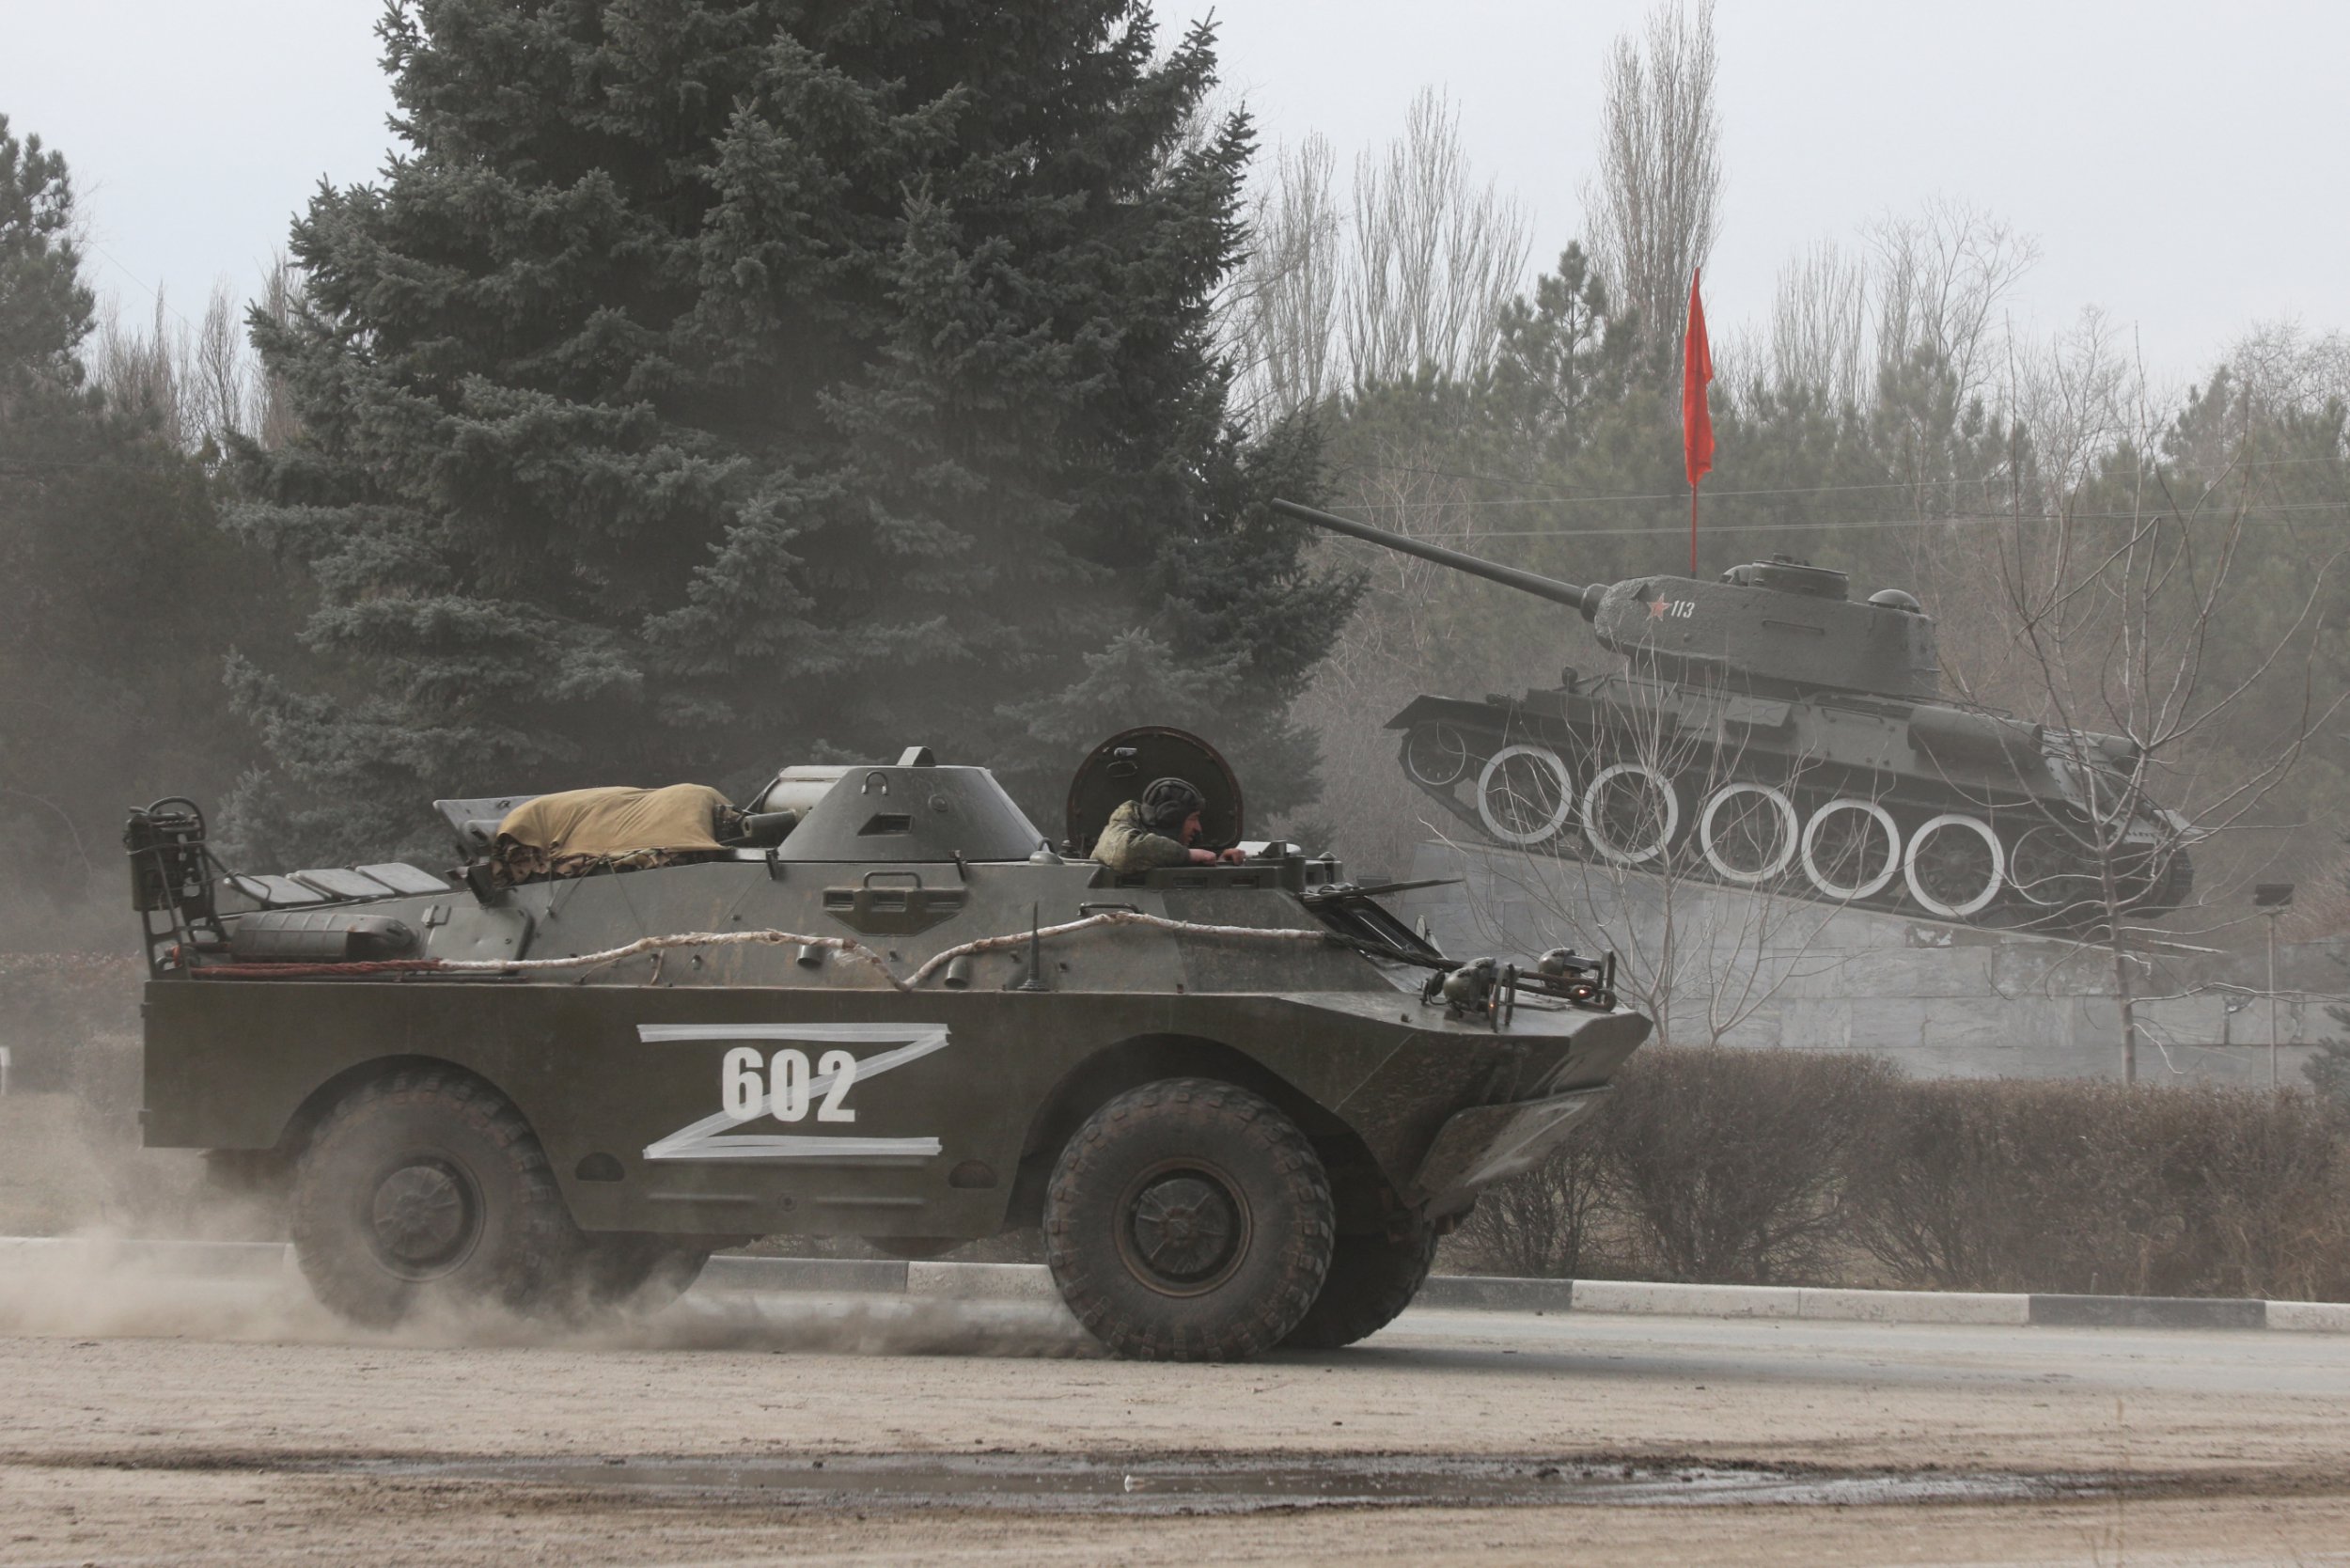 Rus askeri araçları üzerinde neden Z harfi var, anlamı ne? Z işareti ne anlama geliyor?